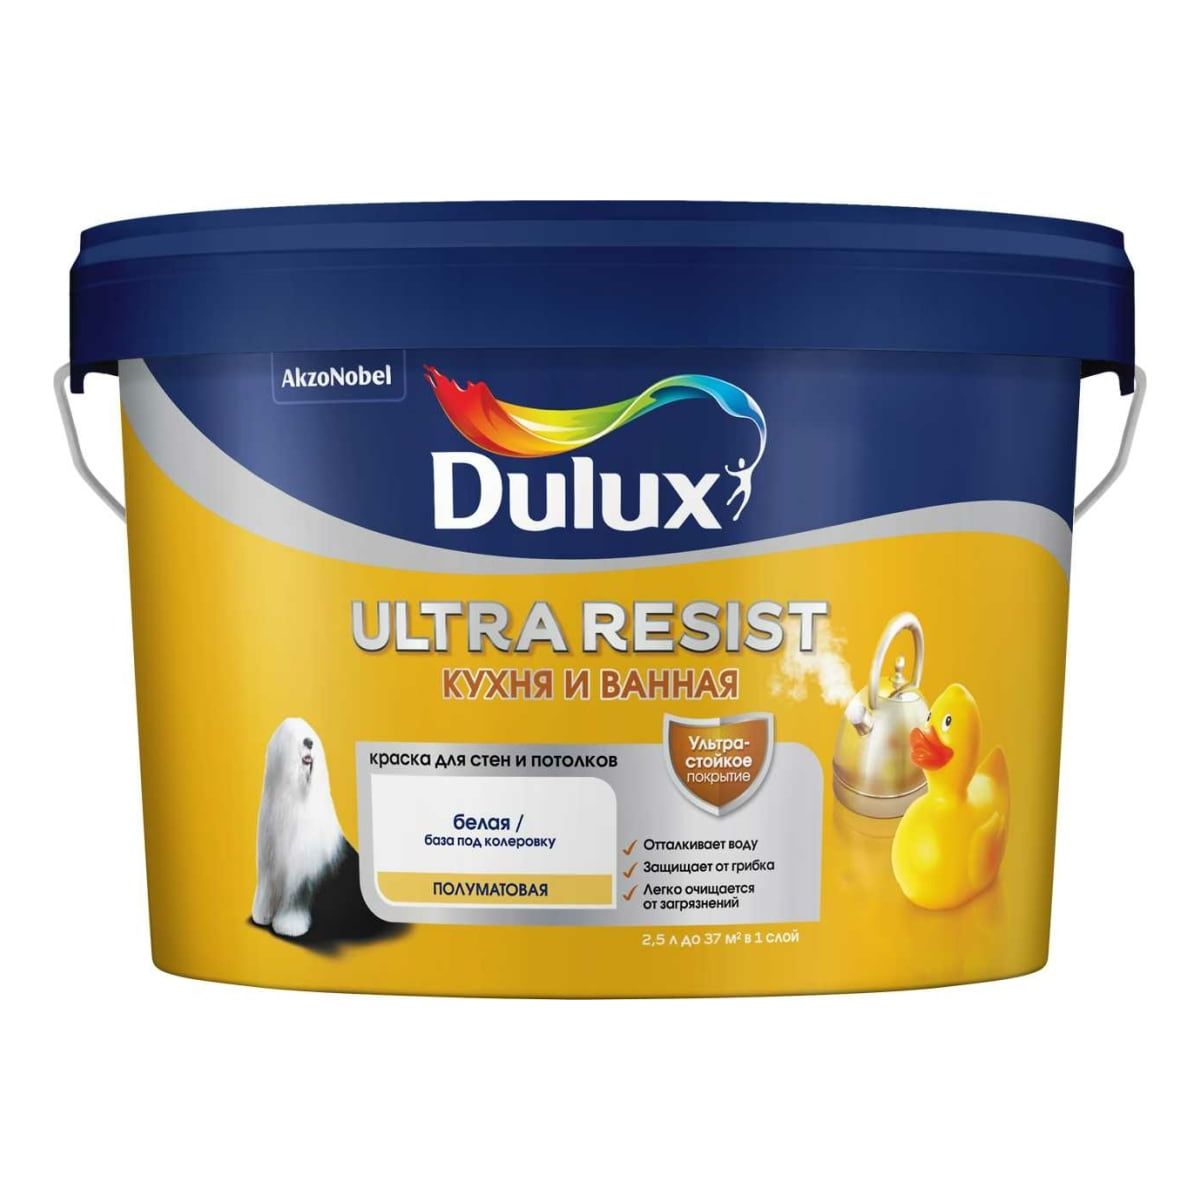 краска dulux ultra resist для кухни и ванной база bw 5 л Краска Dulux Ultra Resist кухня и ванная полуматовая, BW, 2,5 л